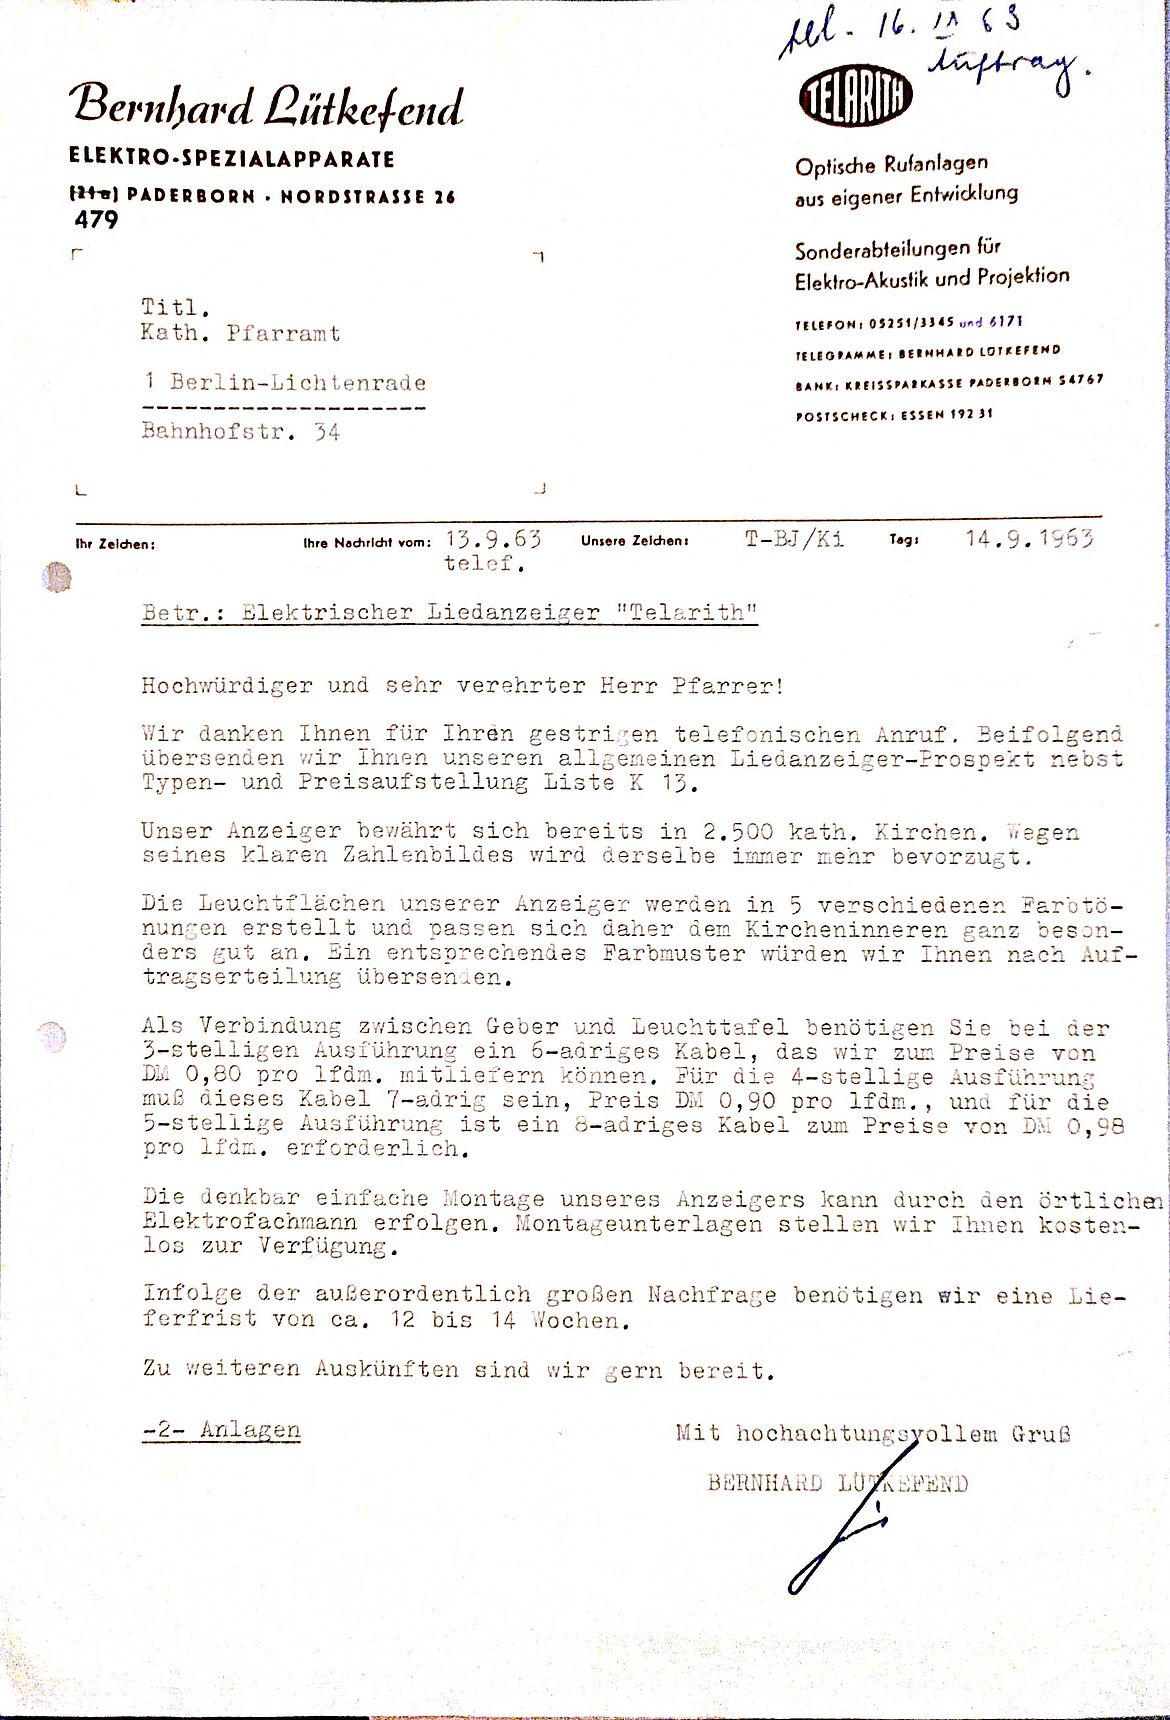 Angebot der Firma Lütkefend, Paderborn, für den neuen Liedanzeiger vom 14. 9. 1963 - Privatbesitz